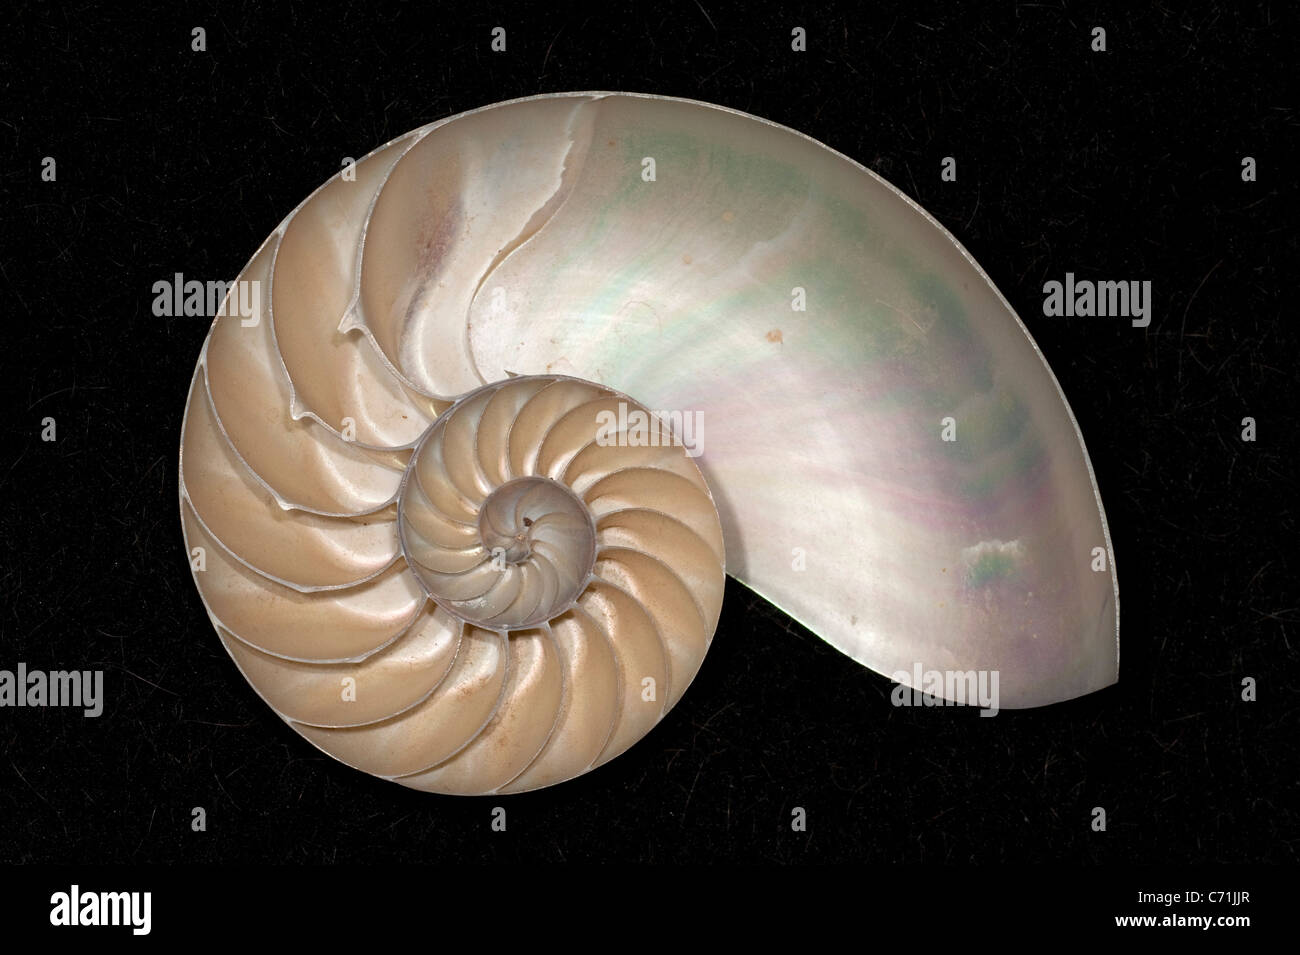 Chambered Nautilus shell Stock Photo